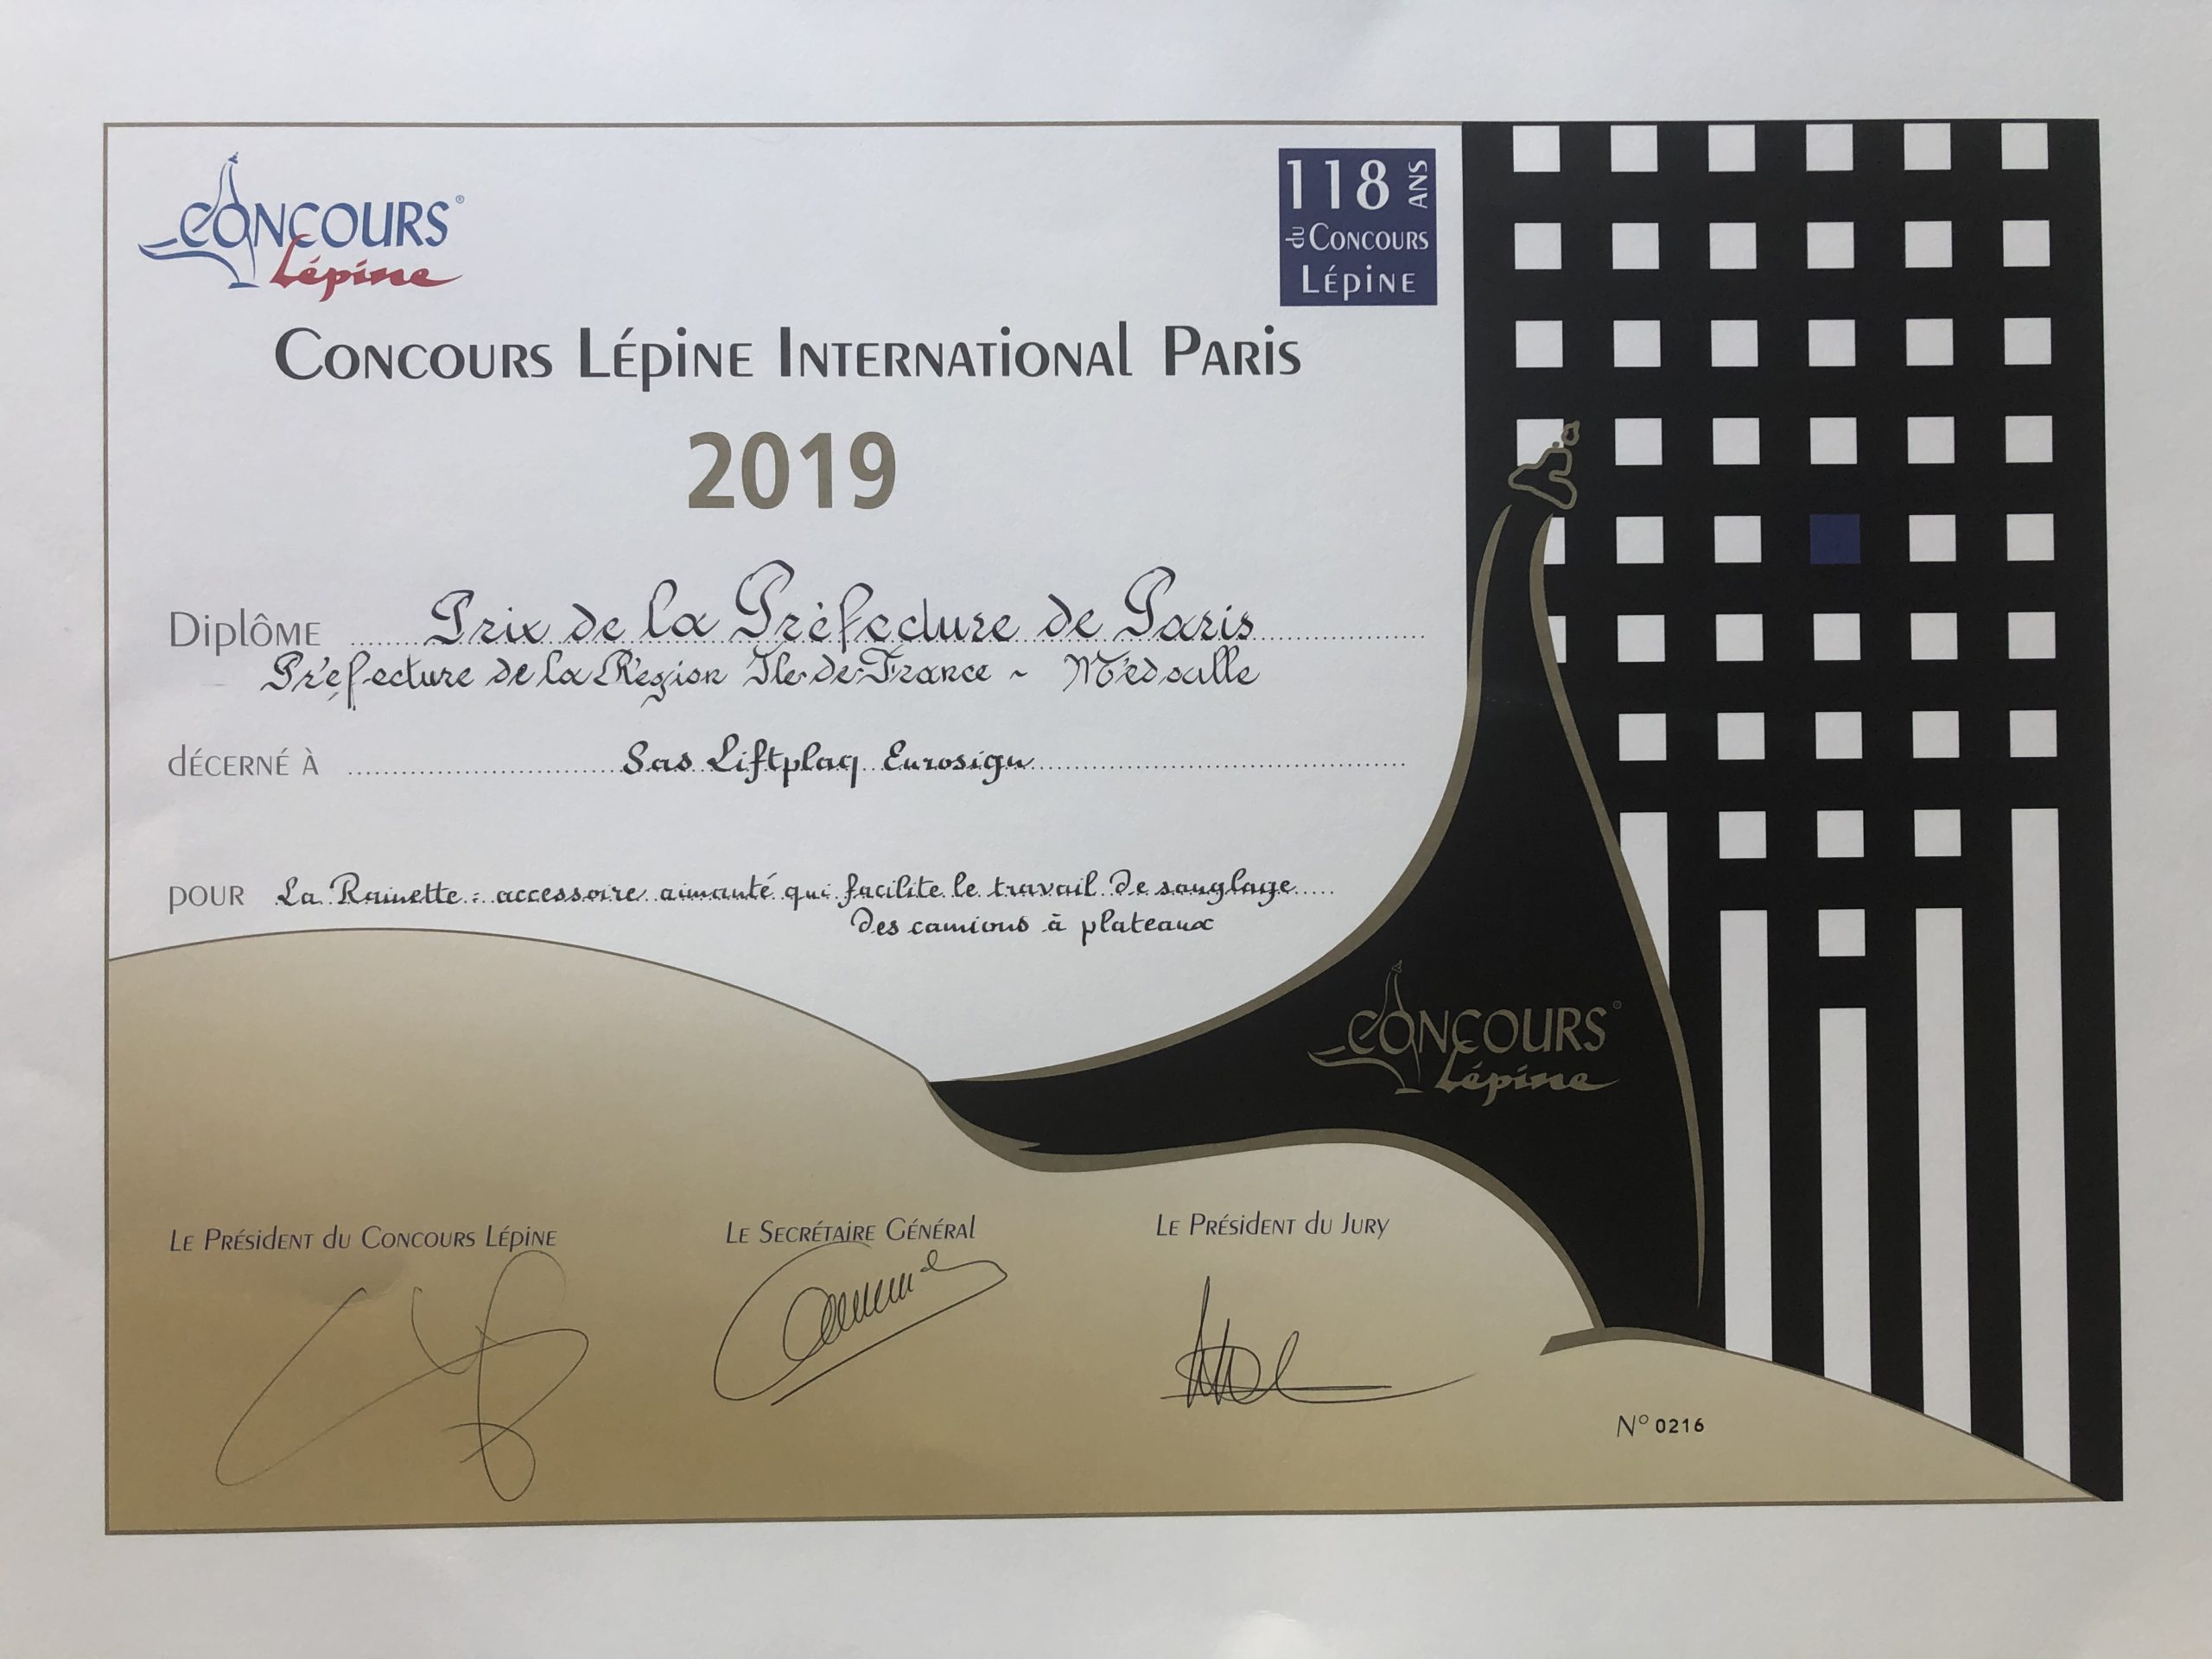 Concours Lépine International Paris 2019